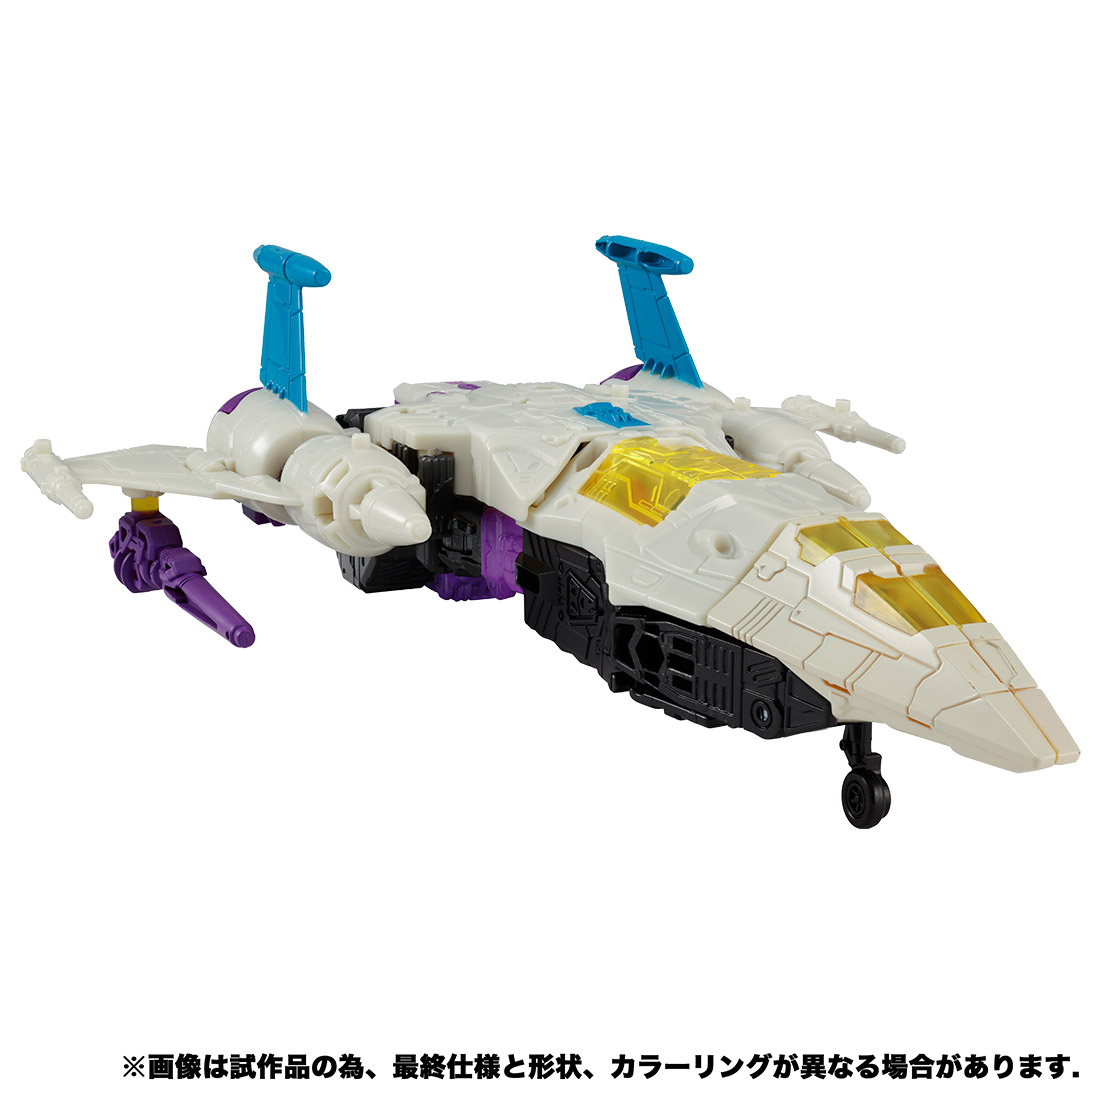 【限定販売】トランスフォーマー アースライズ『ER EX-10 スナップドラゴン』可変可動フィギュア-003